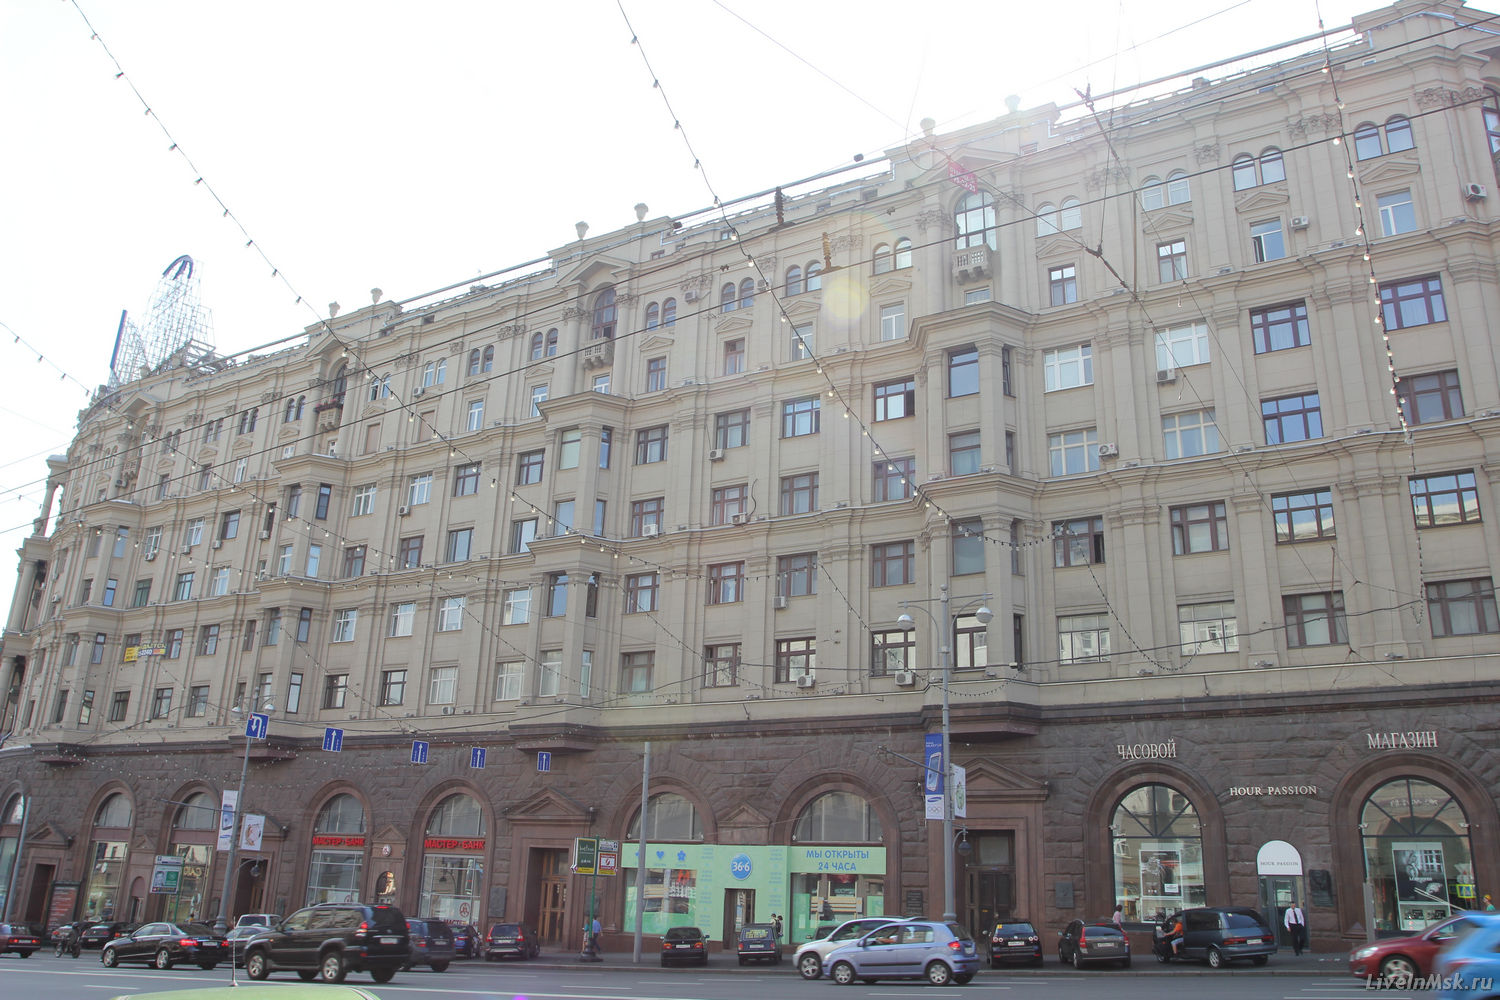 Жилой дом №9 на Тверской улице, фото 2014 года